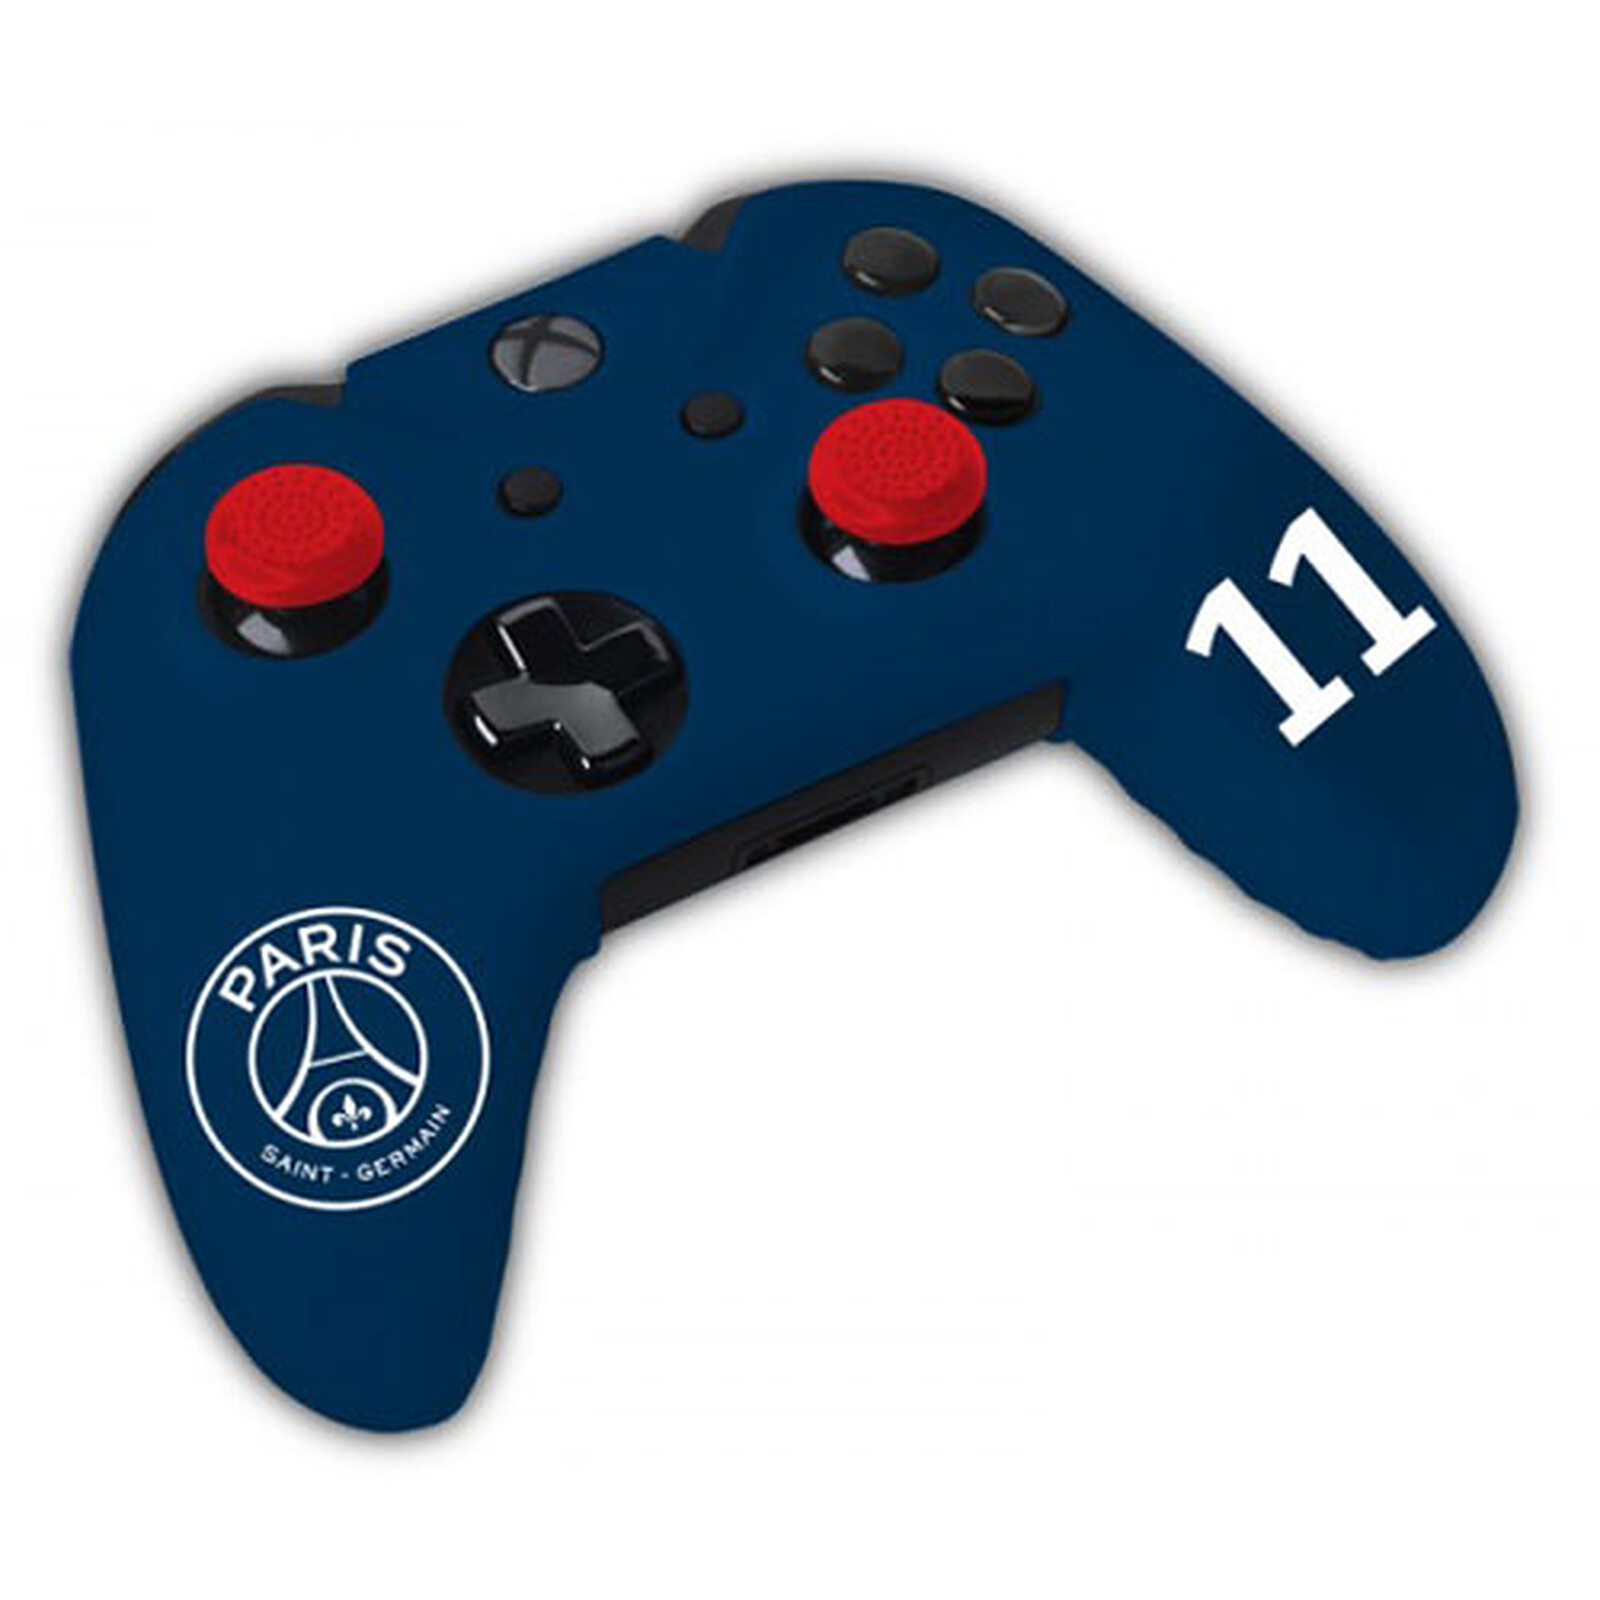 PSG - Paris Saint Germain Kit d'Accessoires avec Housse de